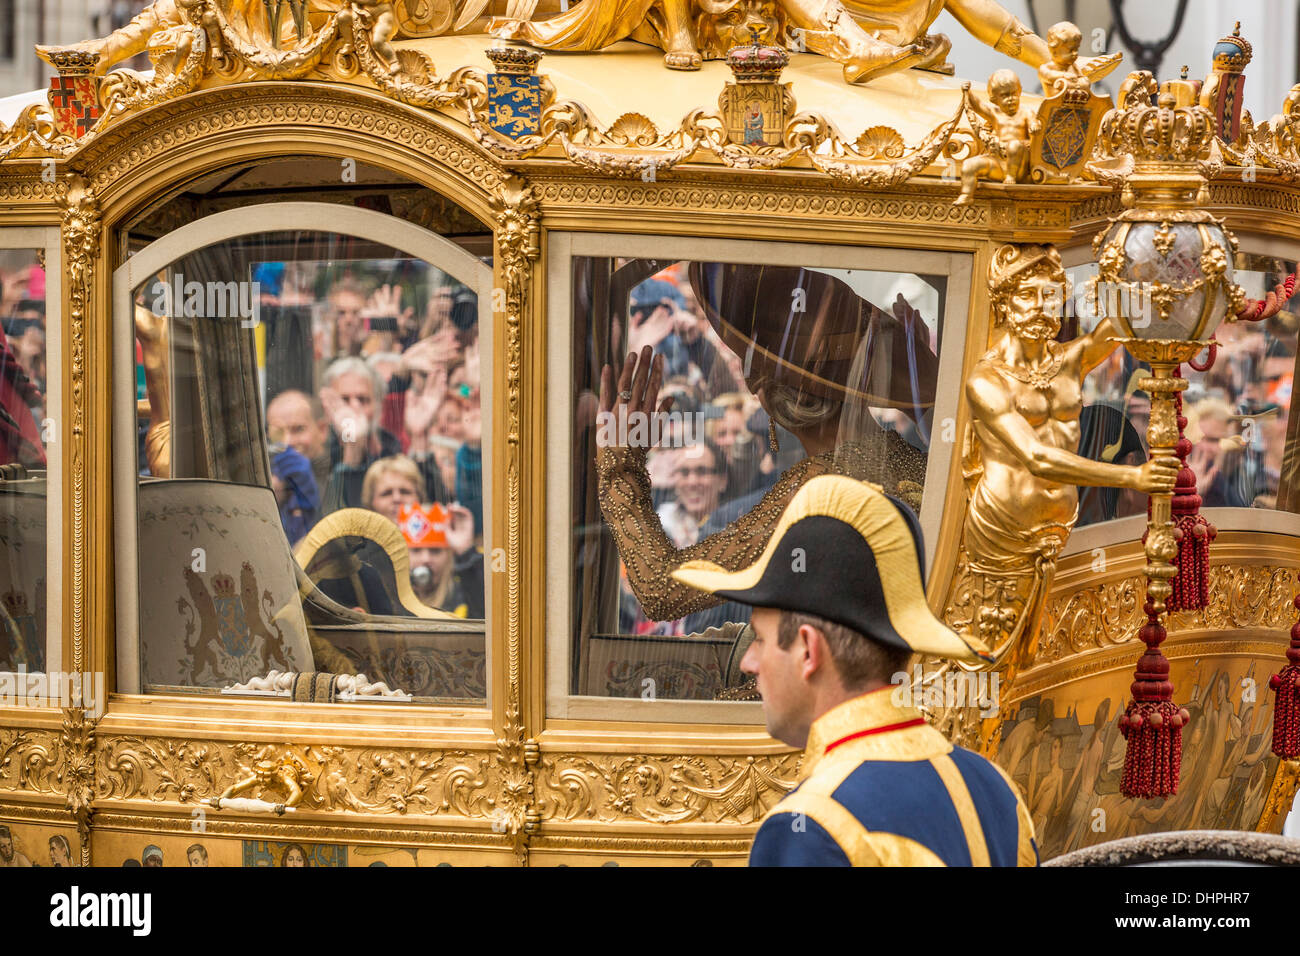 Pays-bas, La Haye, 17 septembre 2013, appelée Prinsjesdag, Roi Willem-Alexander et Maxima la reine dans l'entraîneur d'or Banque D'Images